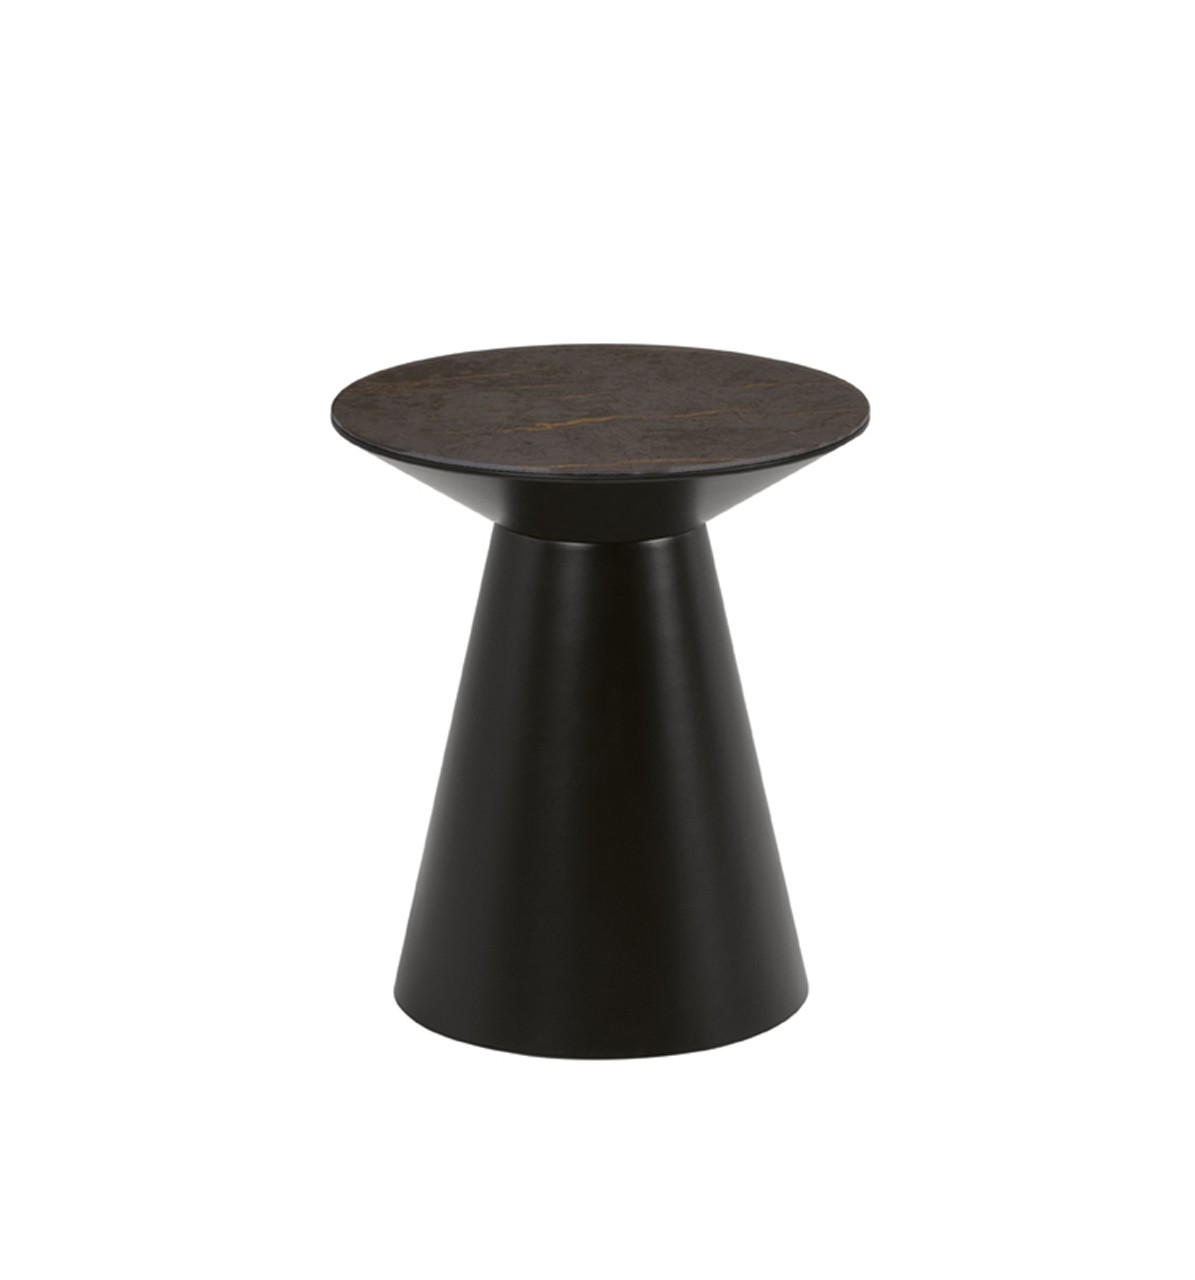 A mesa de apoio Napoli é a peça ideal para adicionar um toque moderno à sua decoração, com o seu design minimalista e sofisticado.